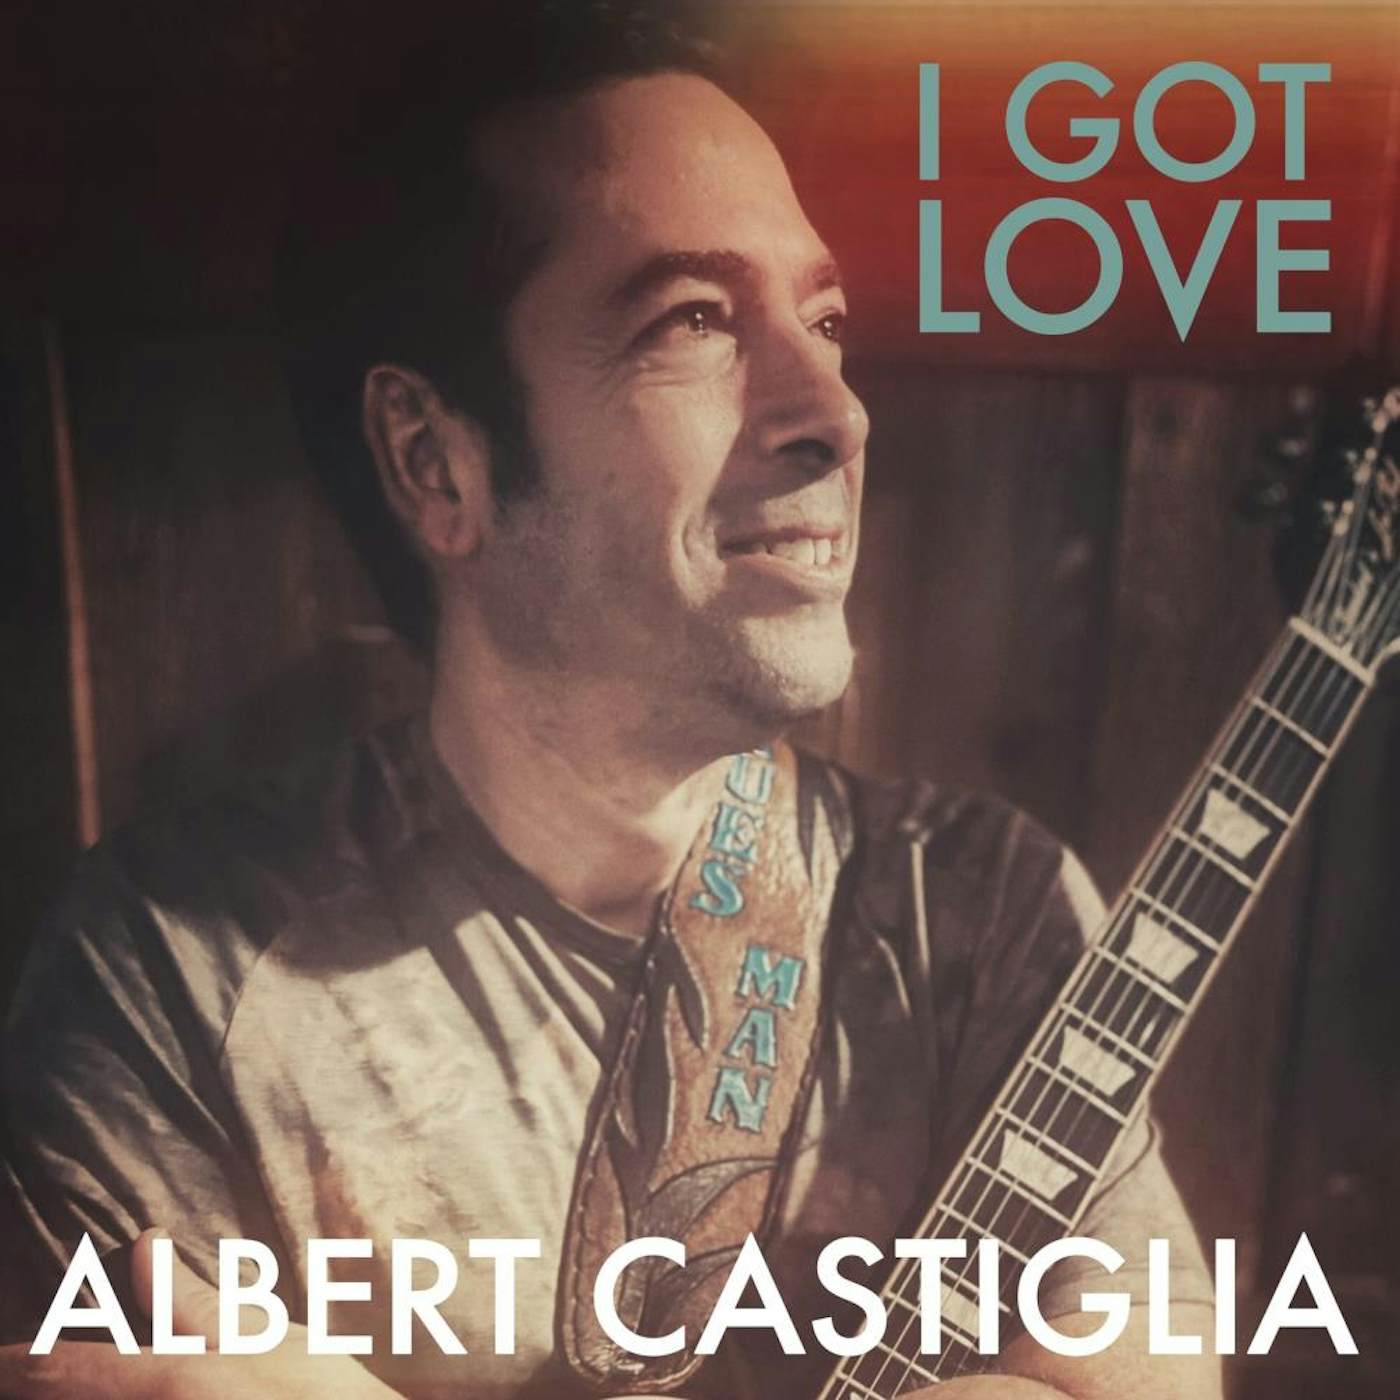 Albert Castiglia I GOT LOVE CD